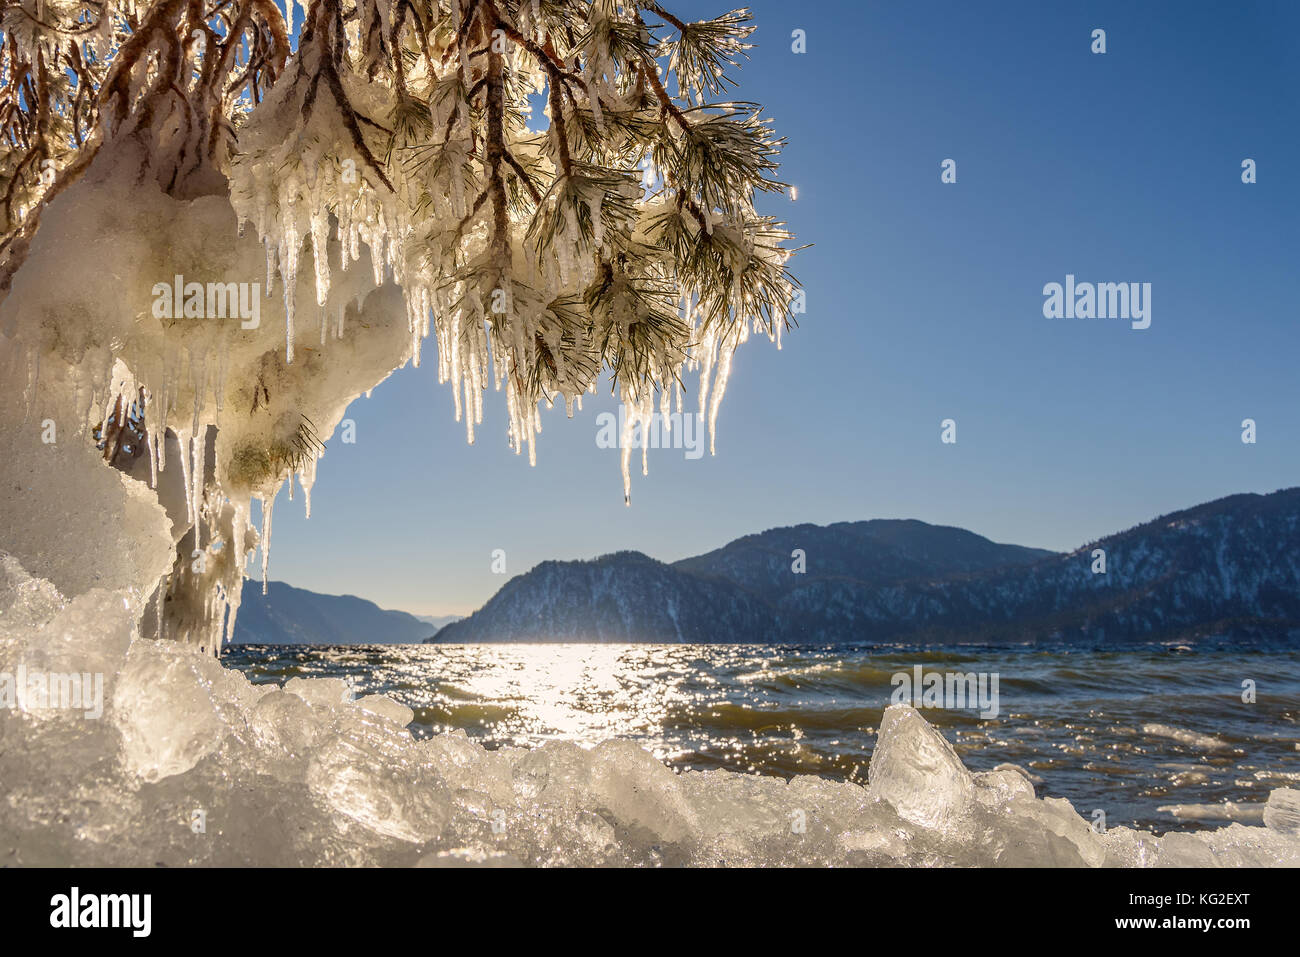 Bellissimi paesaggi invernali con il lago e le montagne di ghiaccio, sulla riva, i riflessi del sole sull'acqua e rami di pino con ghiaccioli in una giornata di sole Foto Stock